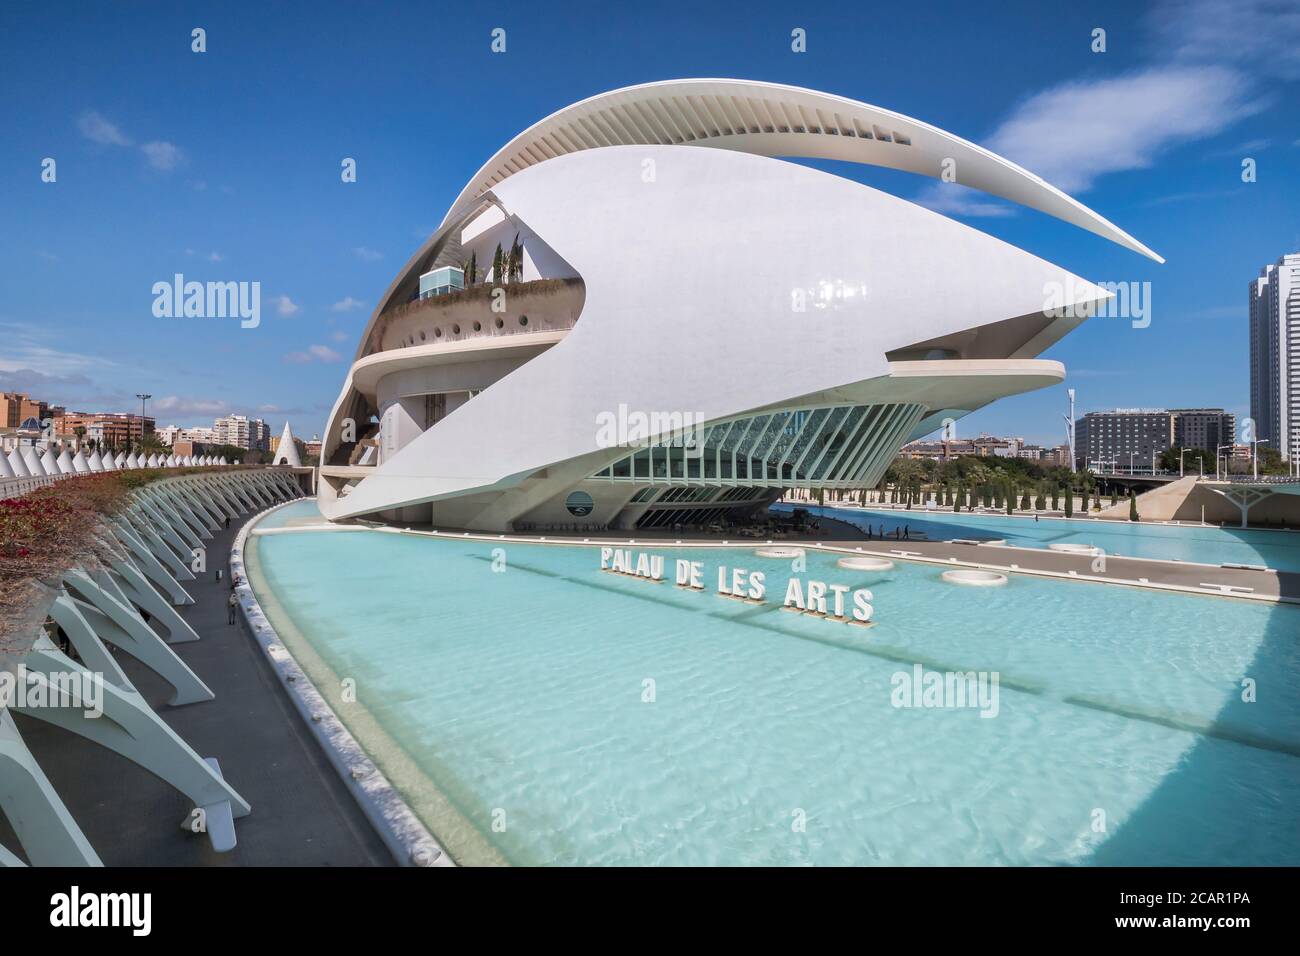 3 marzo 2020: Valencia, Spagna - Palau de les Arts Reina Sofia o Palazzo delle Arti della Regina Sofía, una sala da concerti e teatro dell'opera a Valencia, parte del t Foto Stock